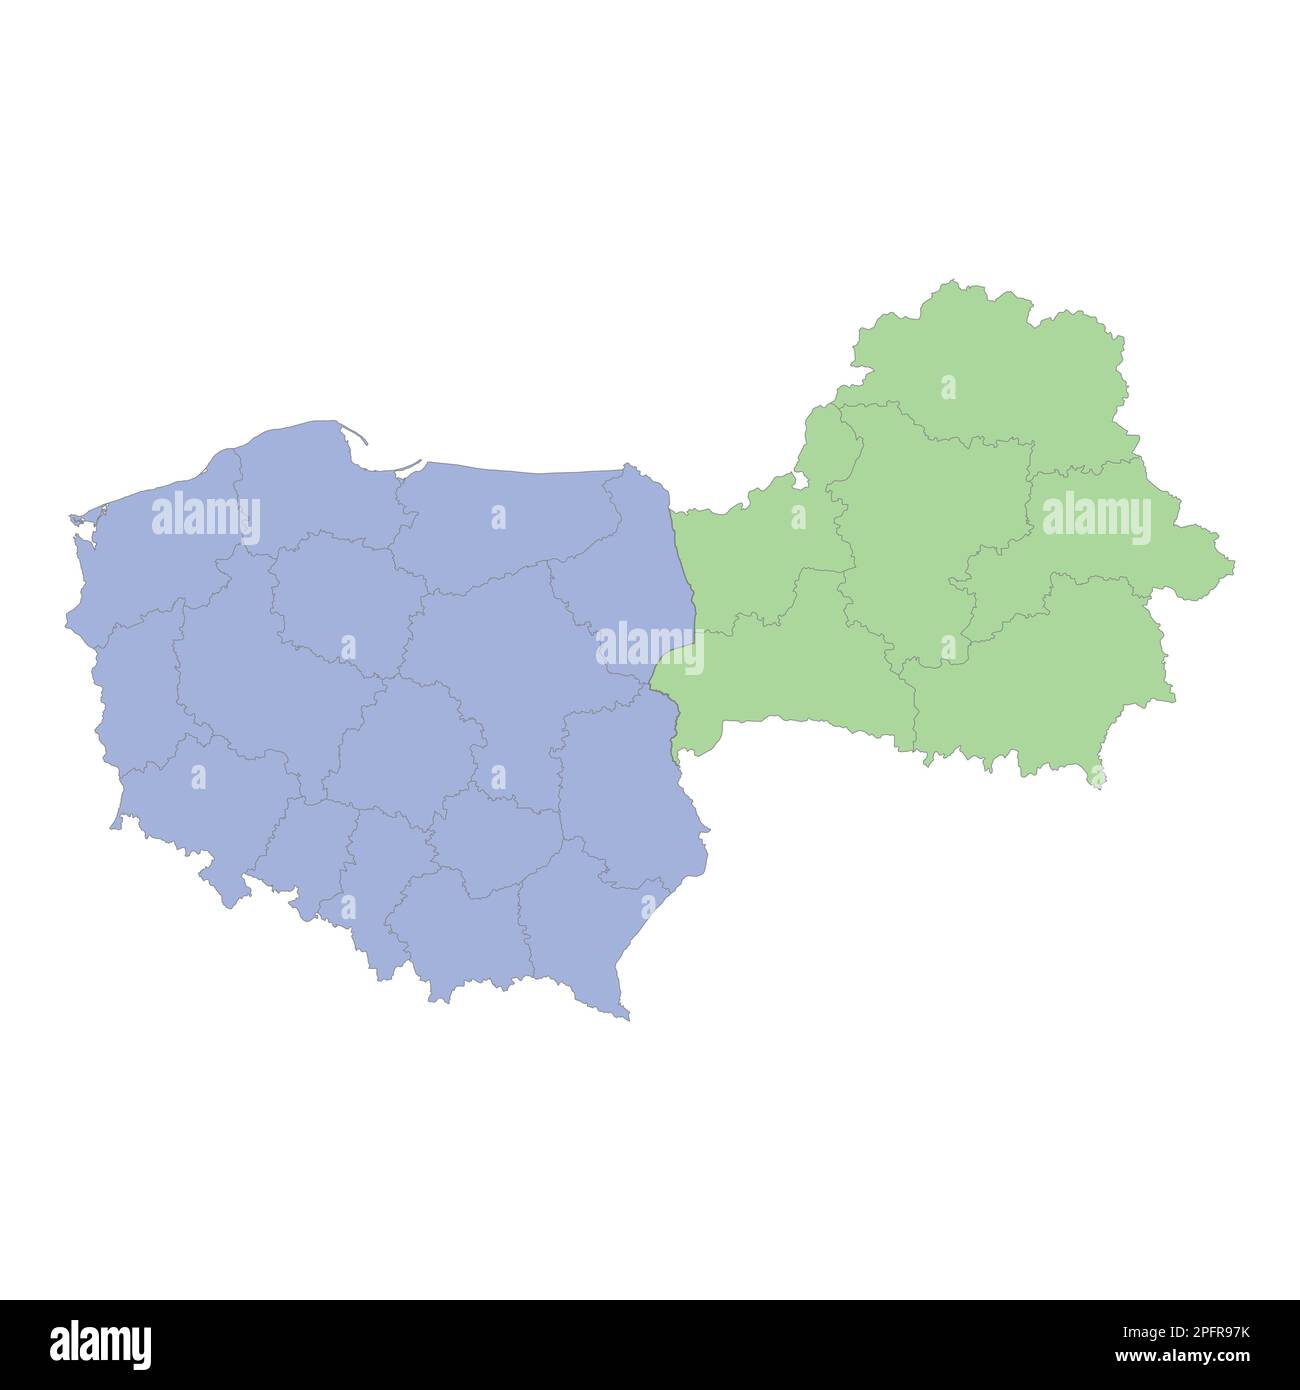 Mappa politica di alta qualità della Polonia e della Bielorussia con i confini delle regioni o delle province. Illustrazione vettoriale Illustrazione Vettoriale